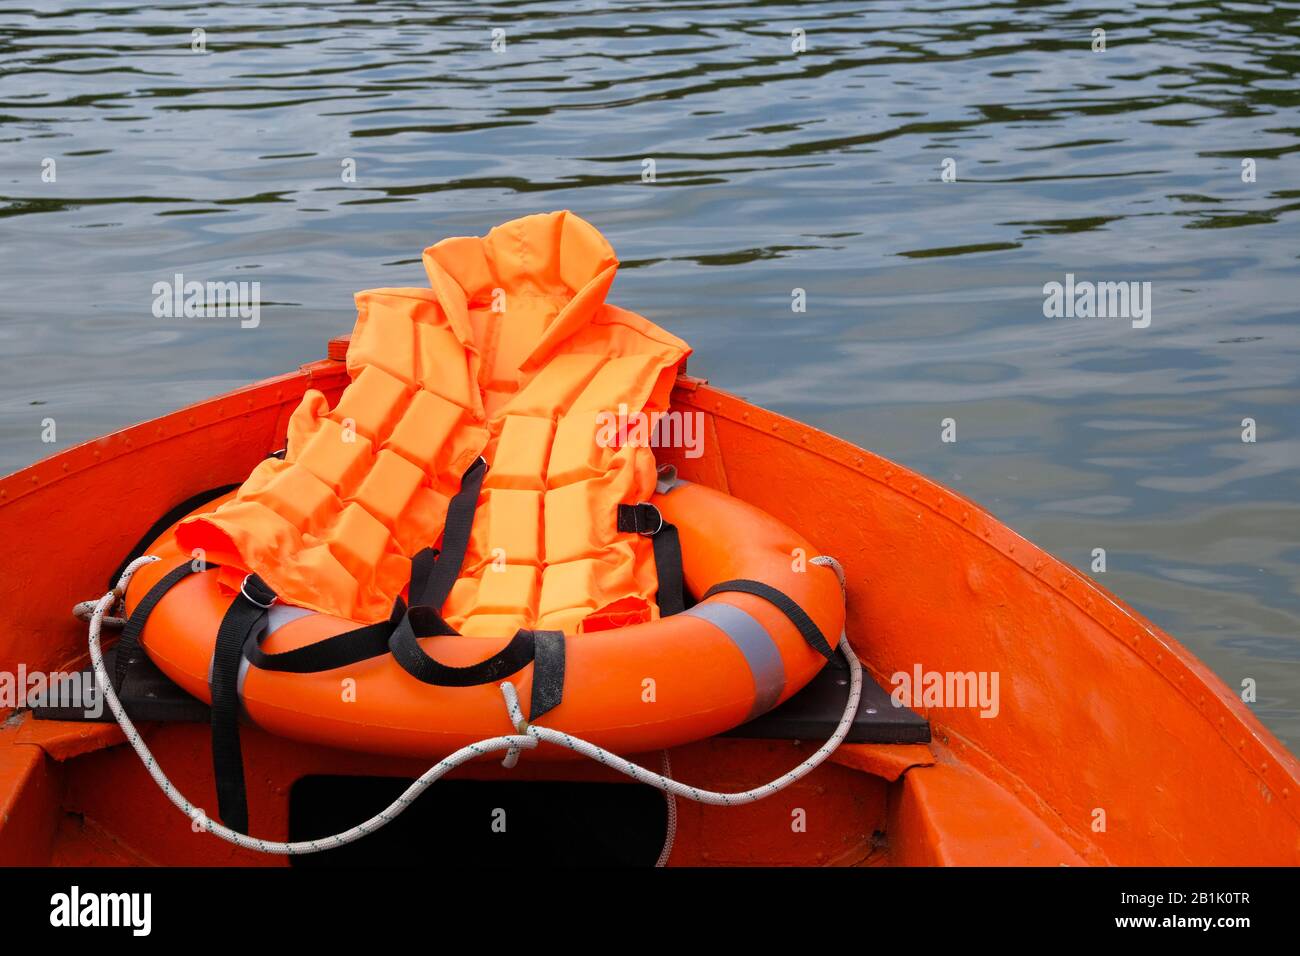 Attrezzatura di bagnino in acqua in barca d'estate, giubbotto salvagente, salvagente in colore arancione. Concetto di salvataggio in acqua in estate. Foto Stock